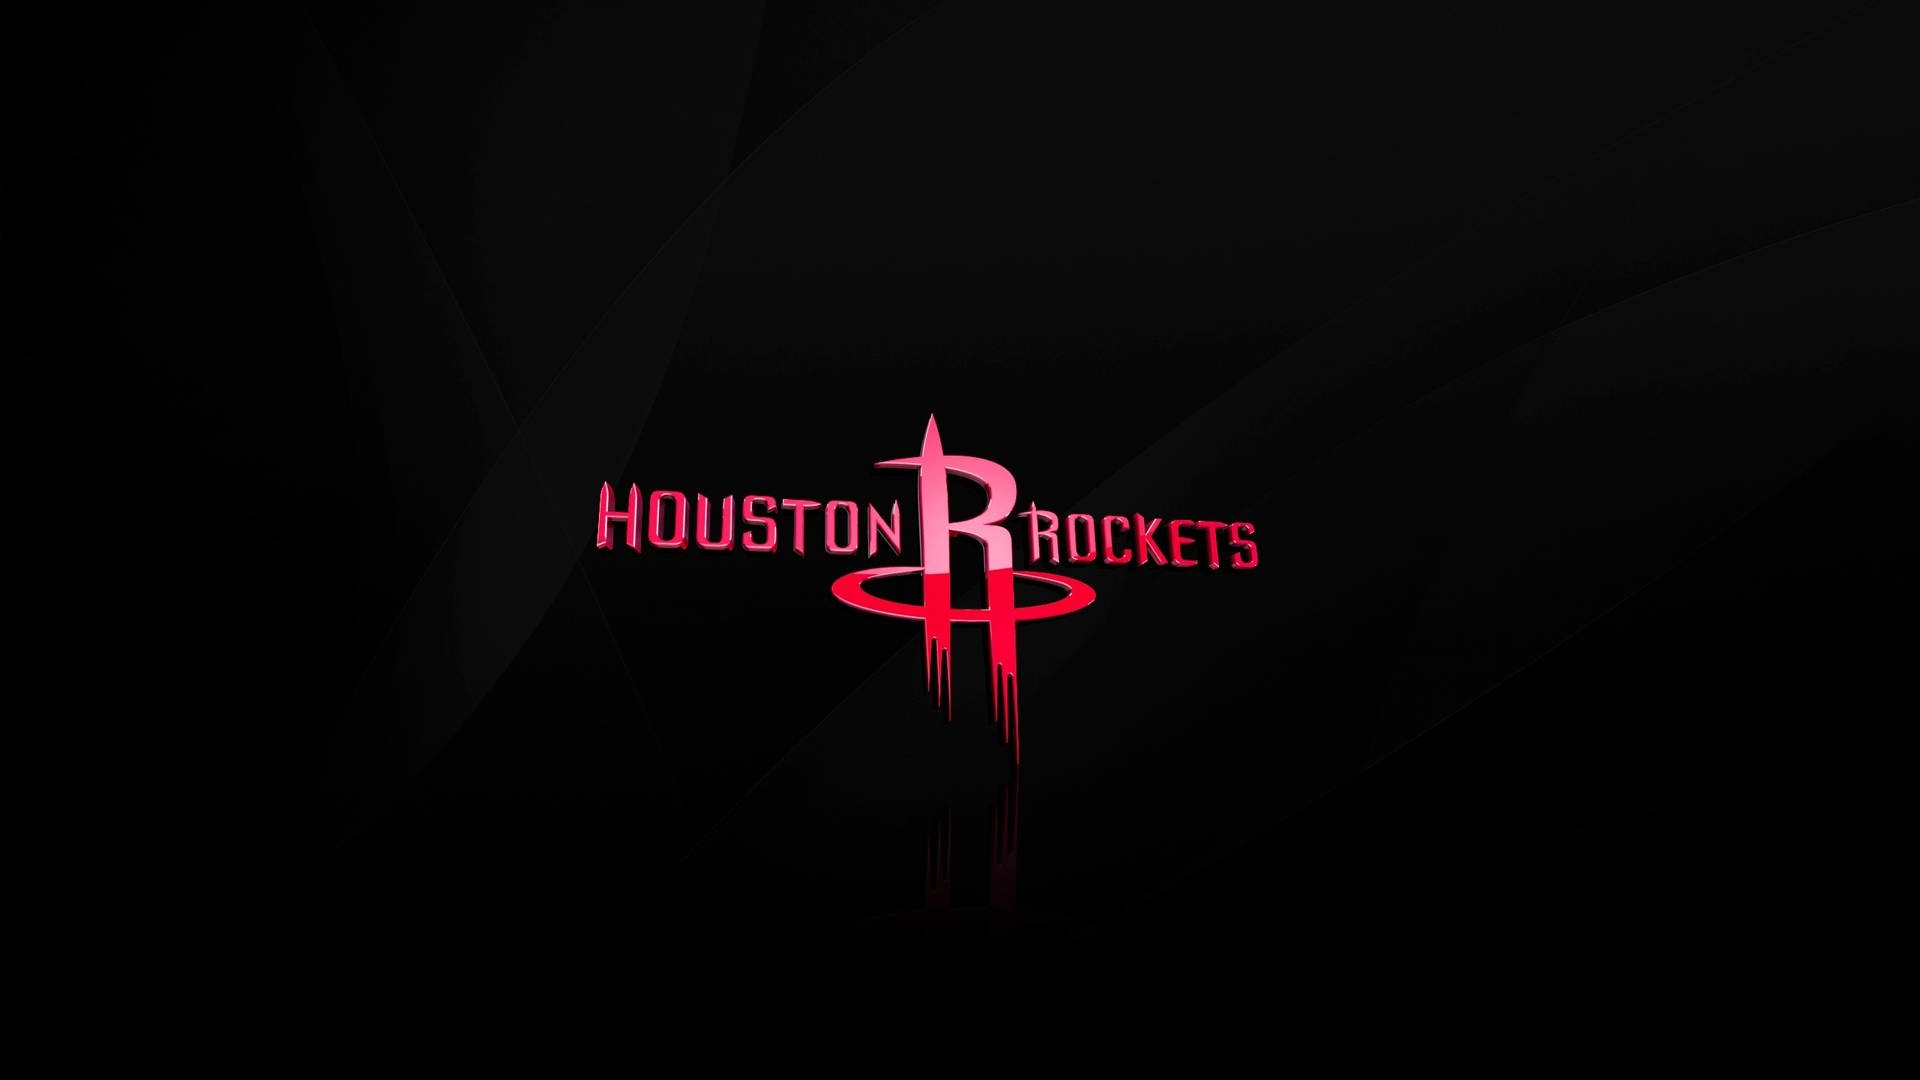 Minimalist Houston Rockets